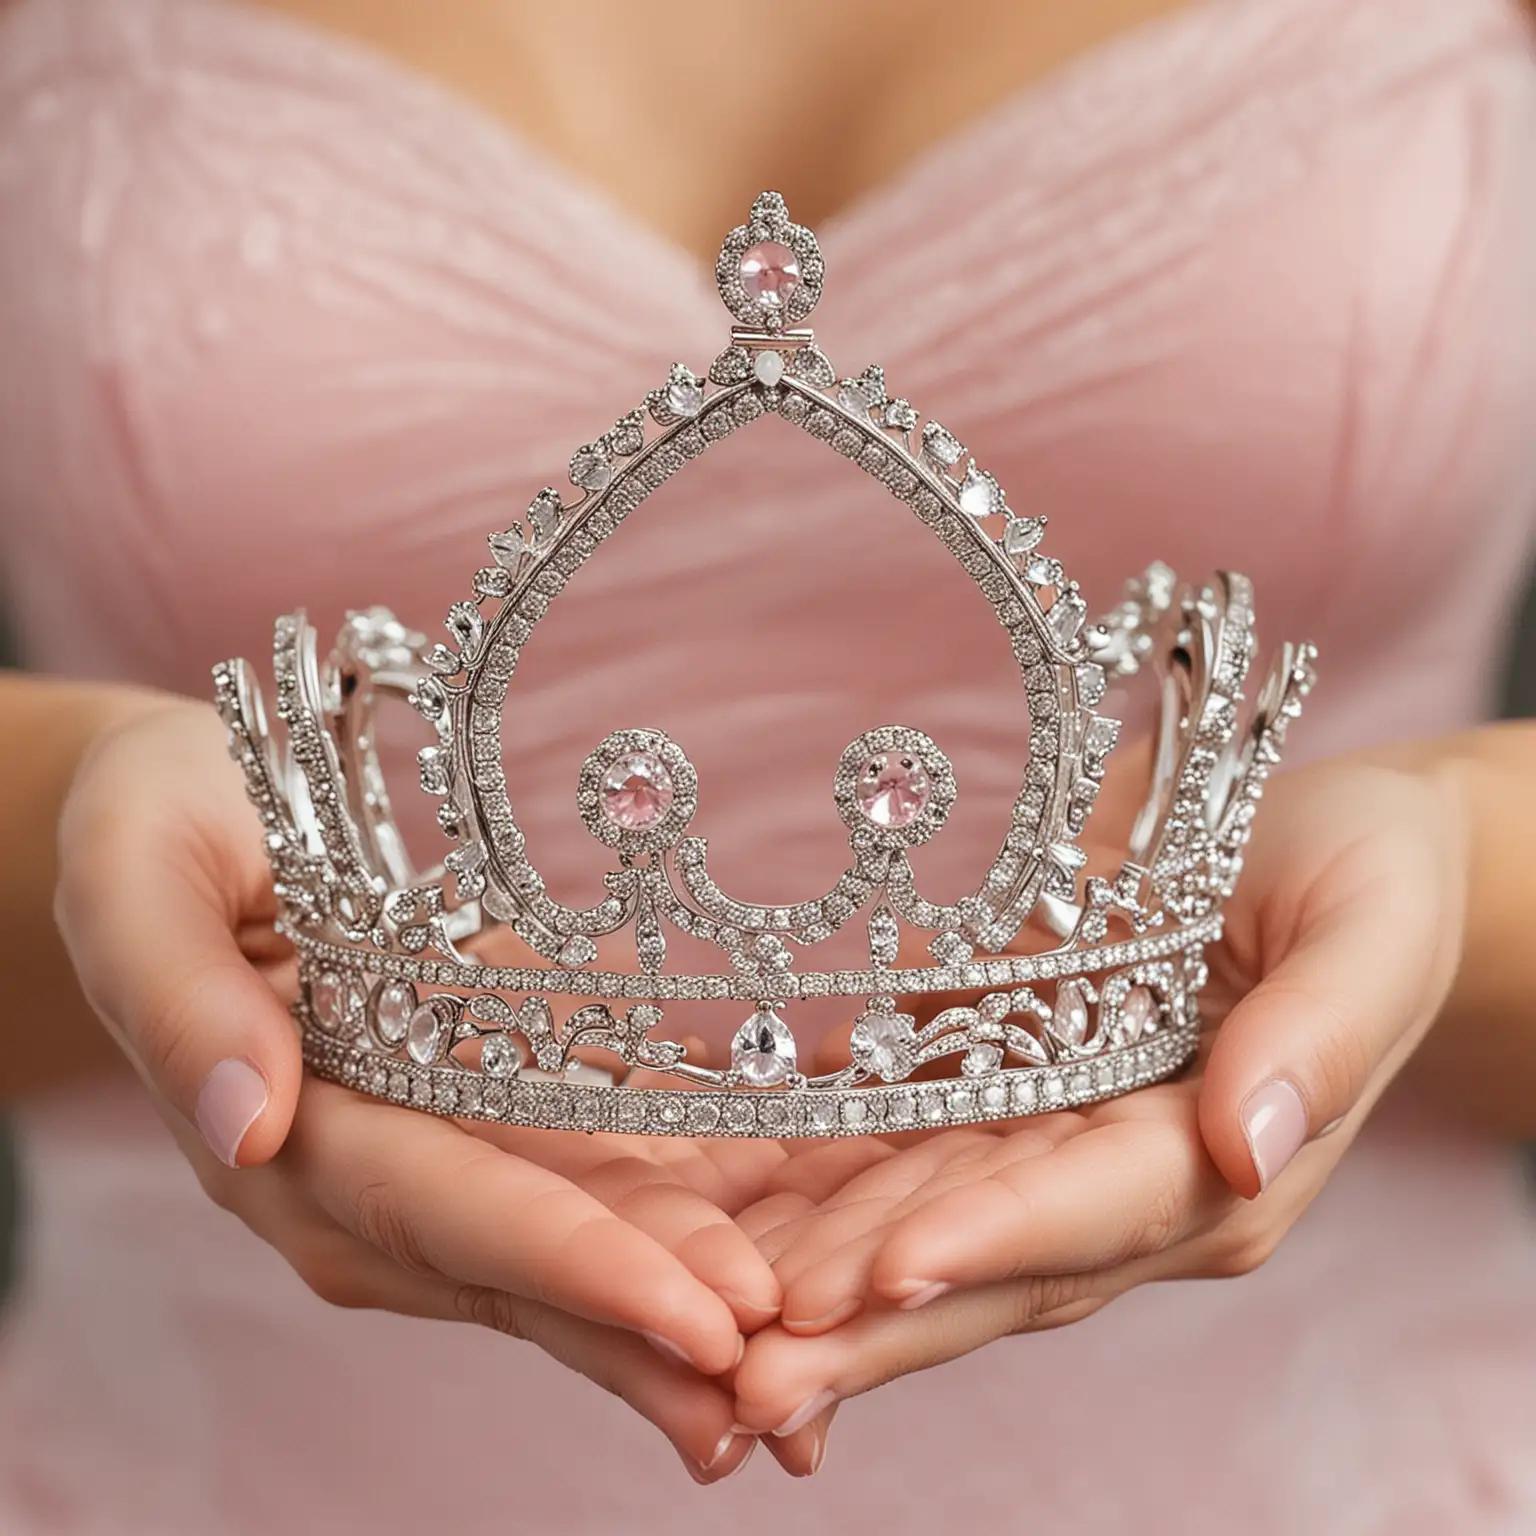 A female hands holding a princess tiara